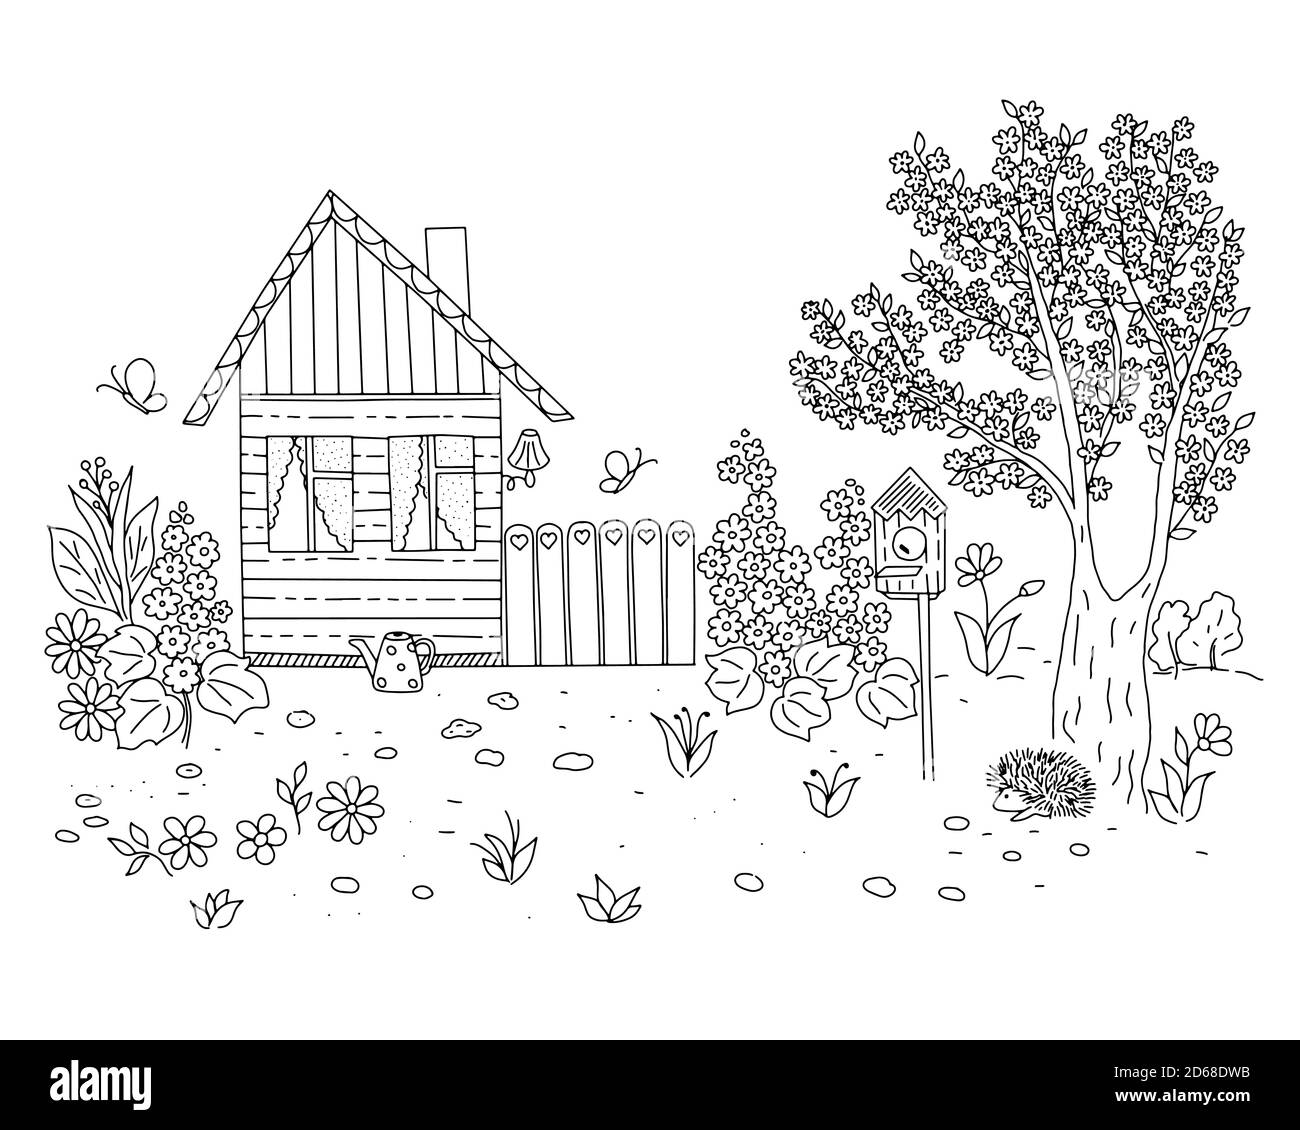 Contorno vettore illustrazione della casa di scena pastorale primavera, cortile, giardino, alberi in fiore, fiori, semplice immagine di stile disegnata a mano per libro da colorare Illustrazione Vettoriale